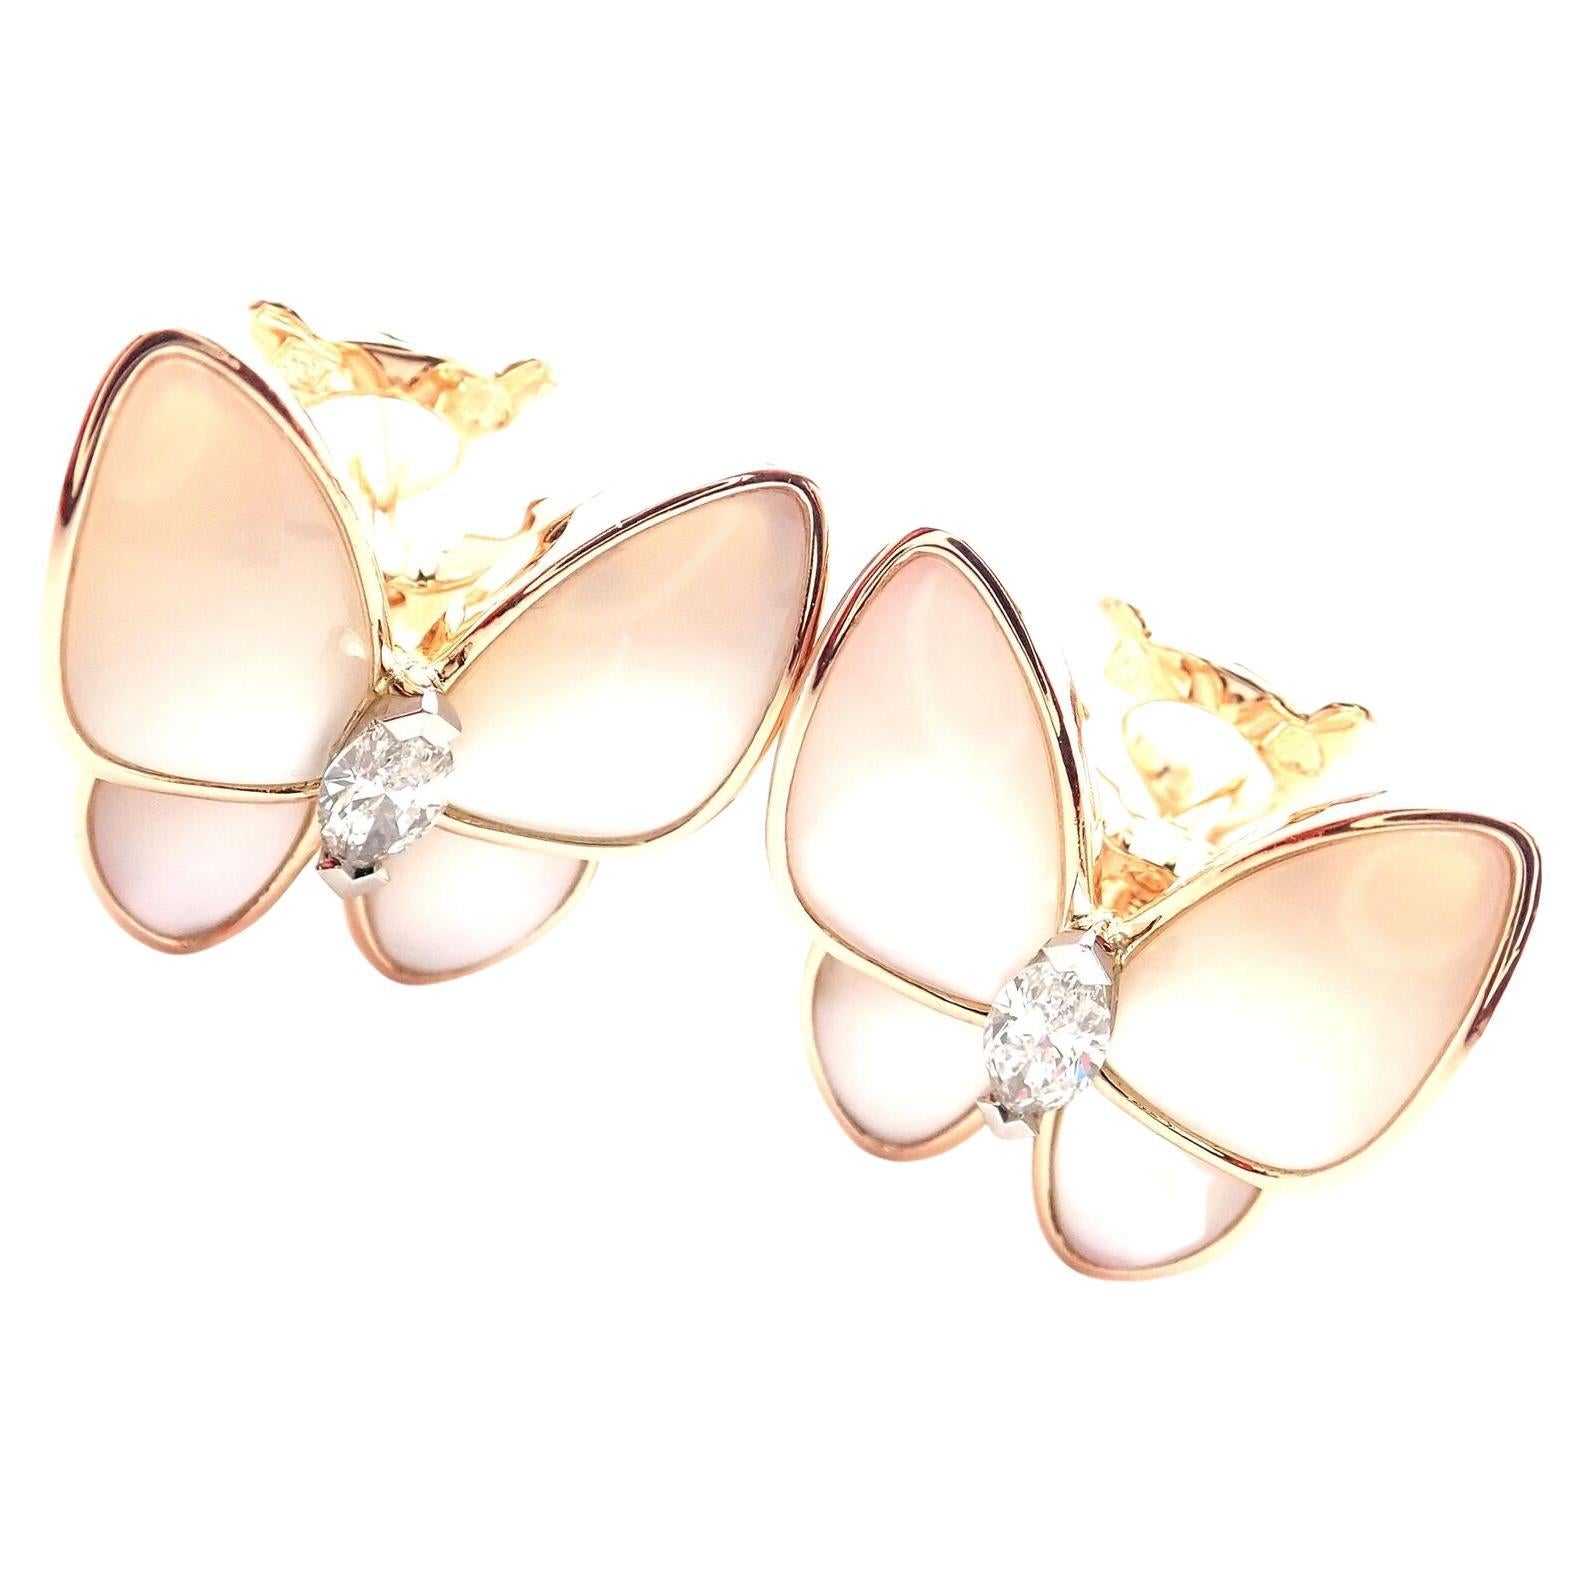 Two Butterfly Earrings